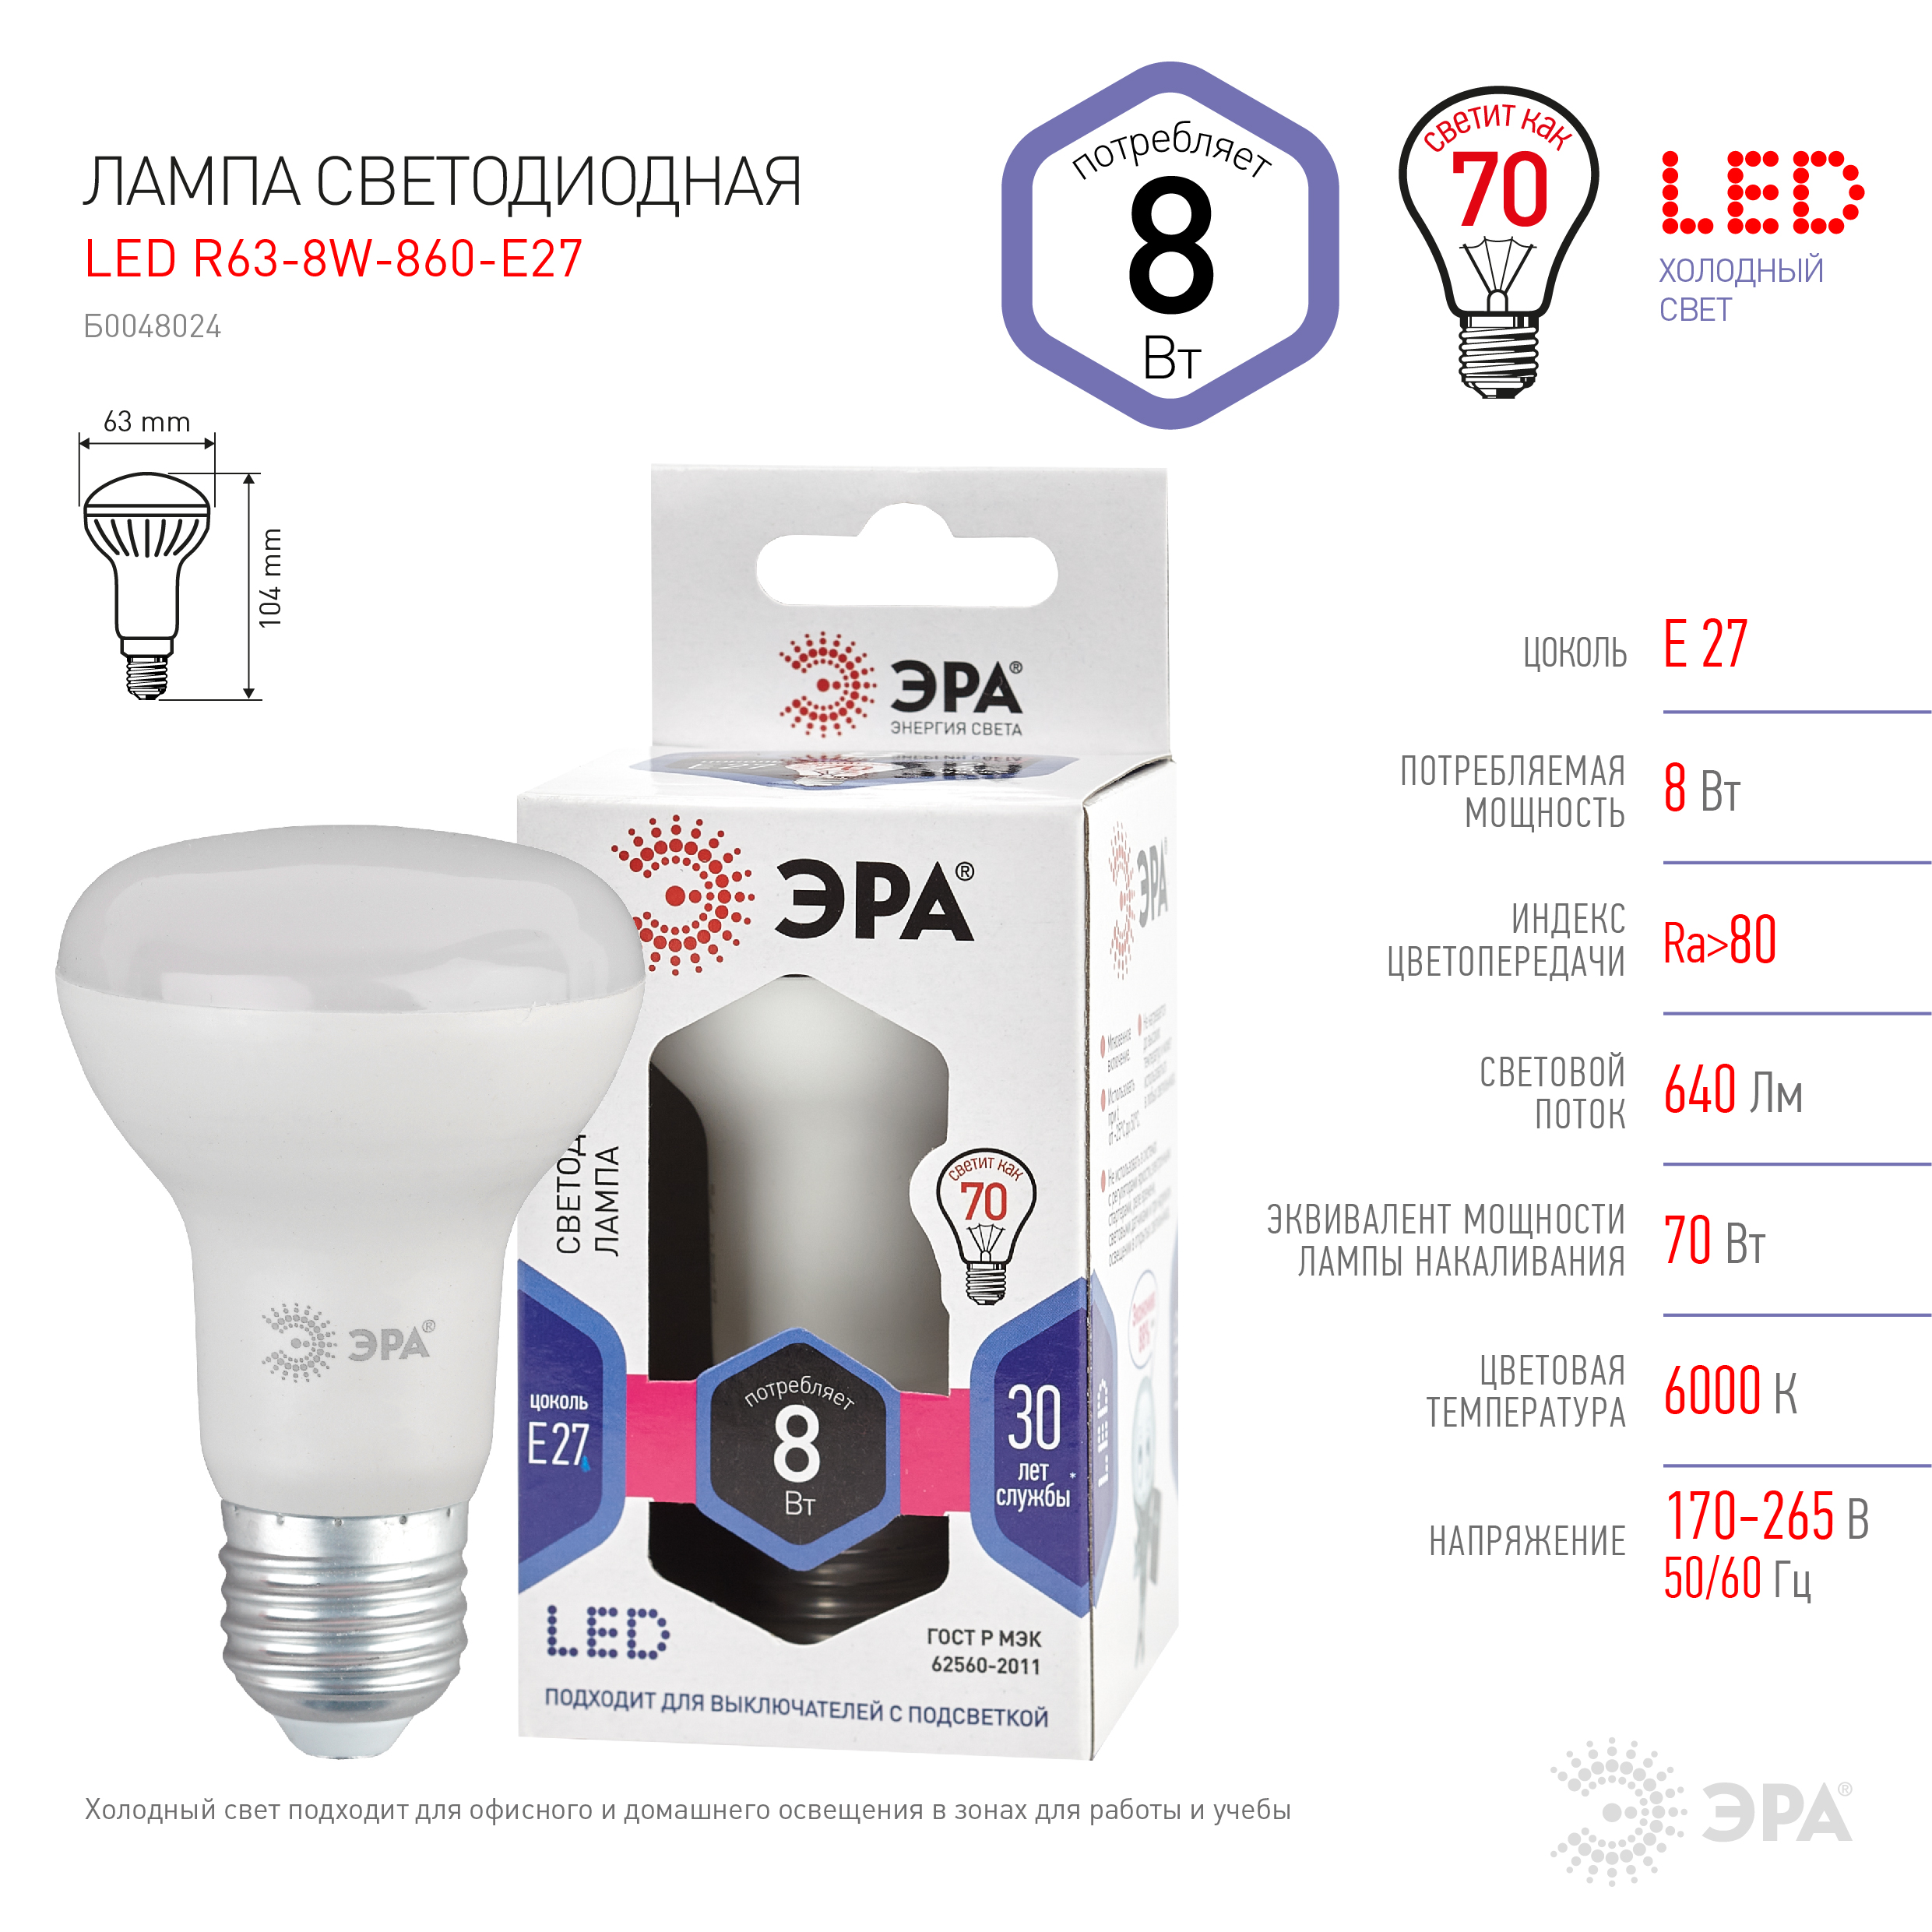 LED R63-8W-860-E27 ЭРА (диод, рефлектор, 8Вт, холод, E27), (10/100/1500)